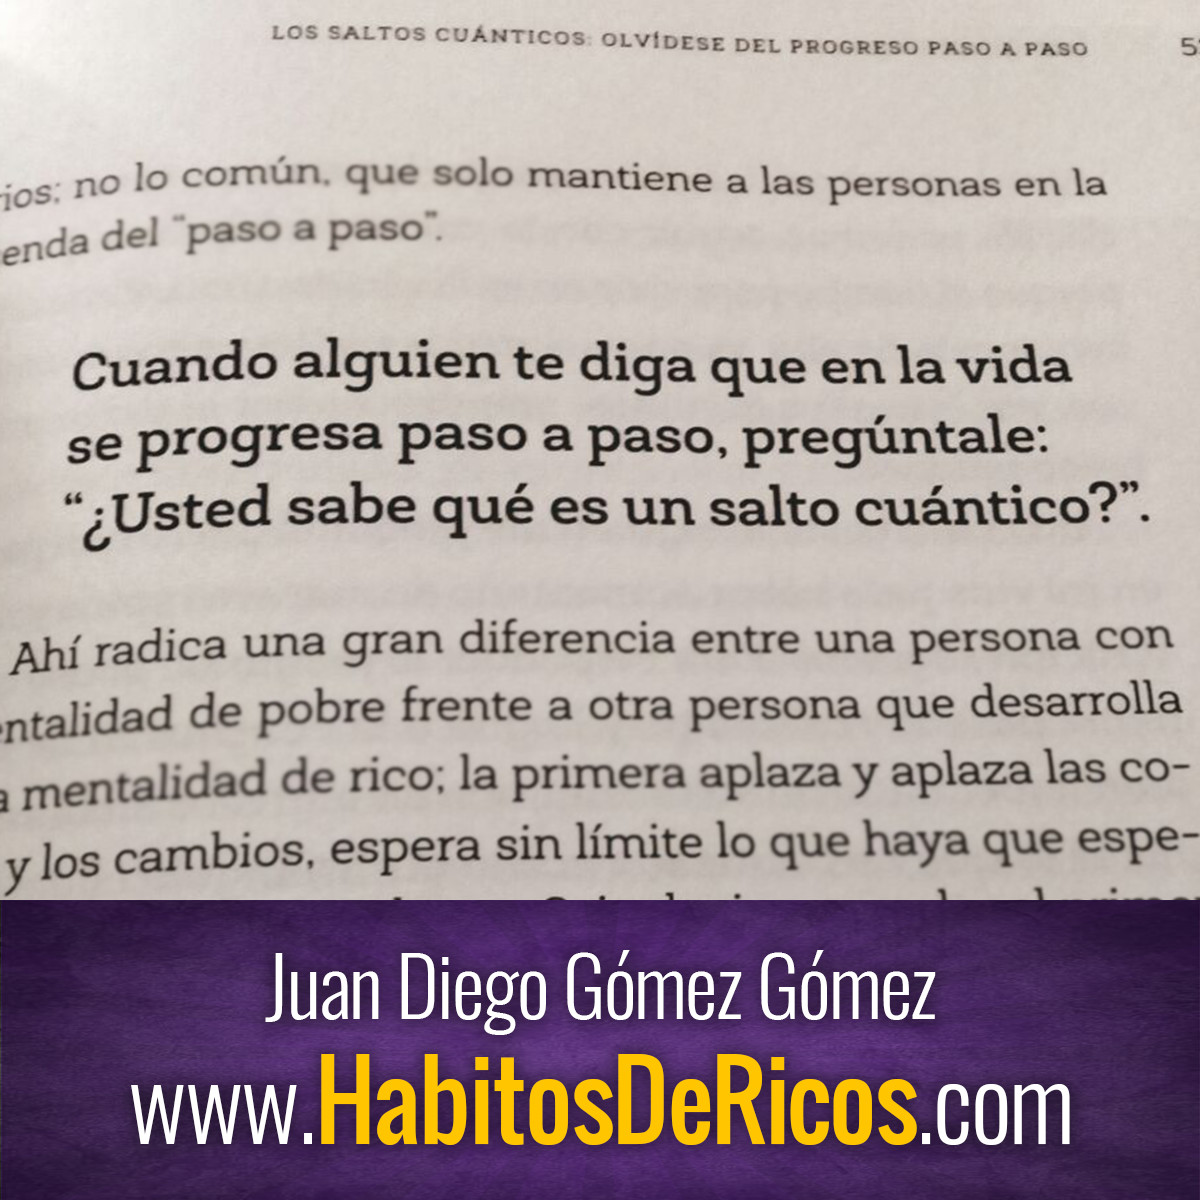 #Recomendado l ¿Cómo quieres que te recuerden? El libro #HábitosDeRicos de #JuanDiegoGómez te espera en el siguiente link: habitosdericos.com Envíos autografiados a #Colombia, #AméricaLatina y #EEUU 

#YoMeQuedoEnCasaLeyendo #LibertadFinanciera #EducaciónFinanciera